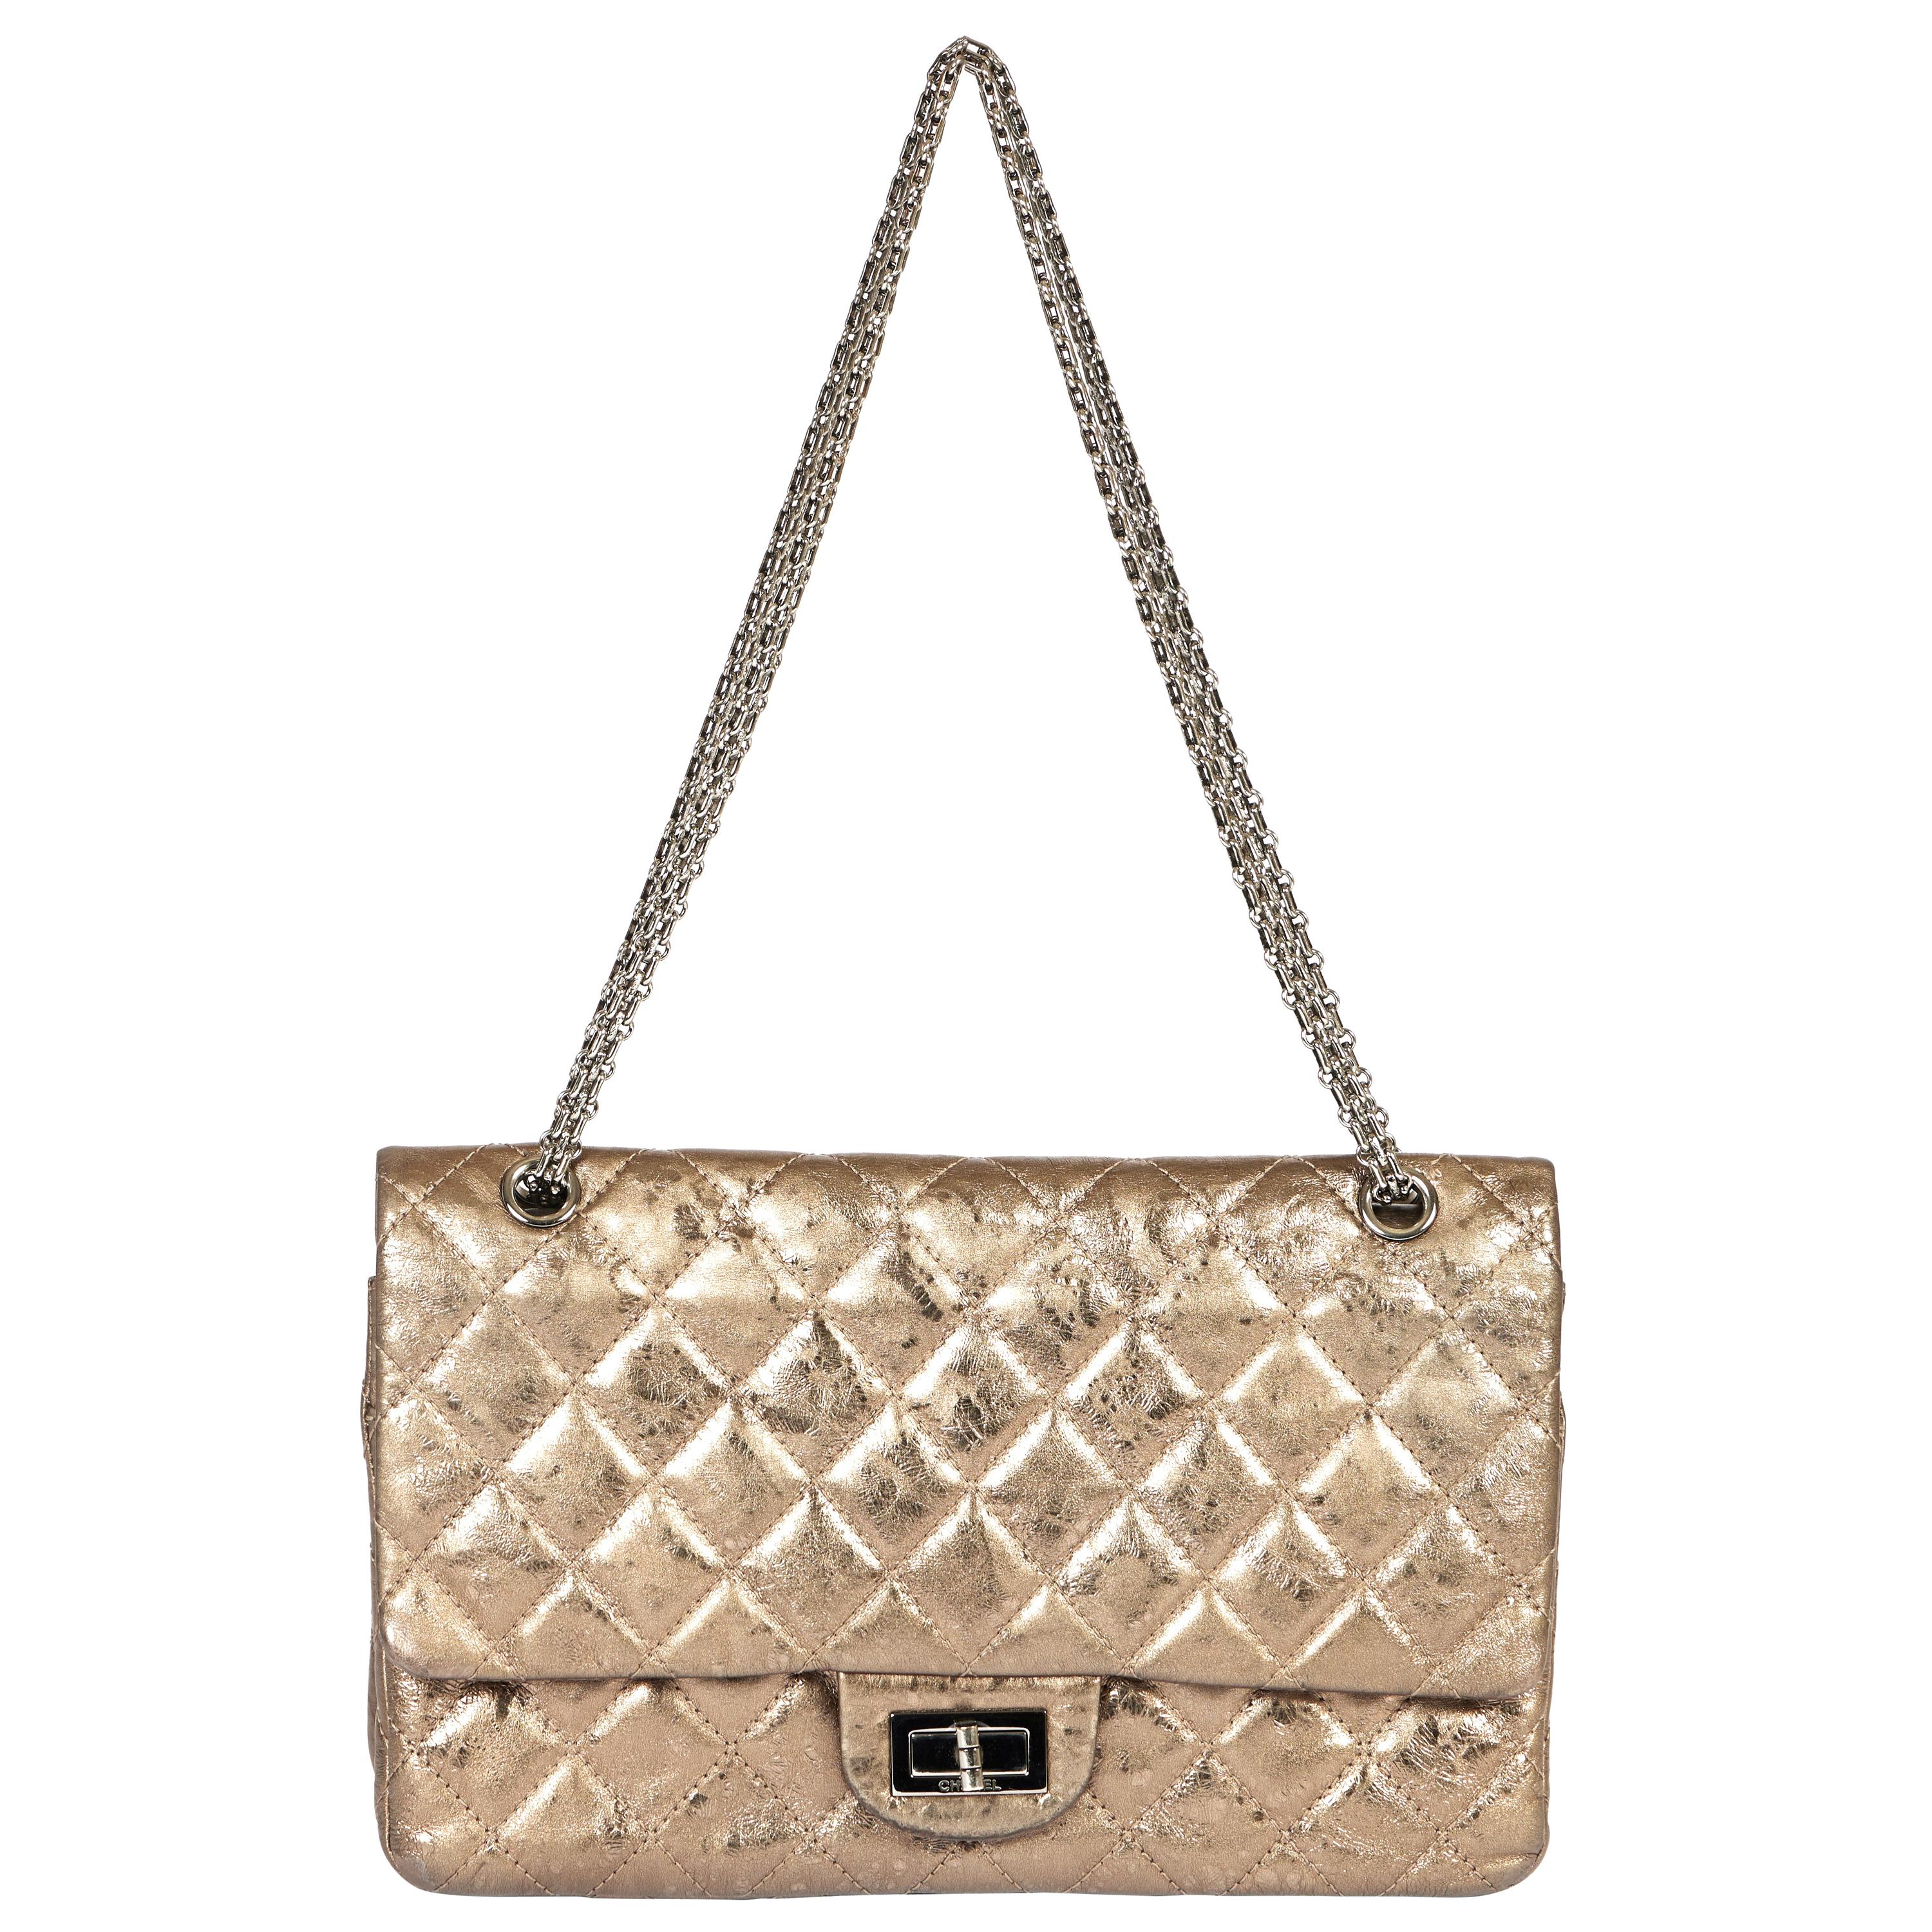 Chanel Light Bronze Reissue Jumbo Flap Bag